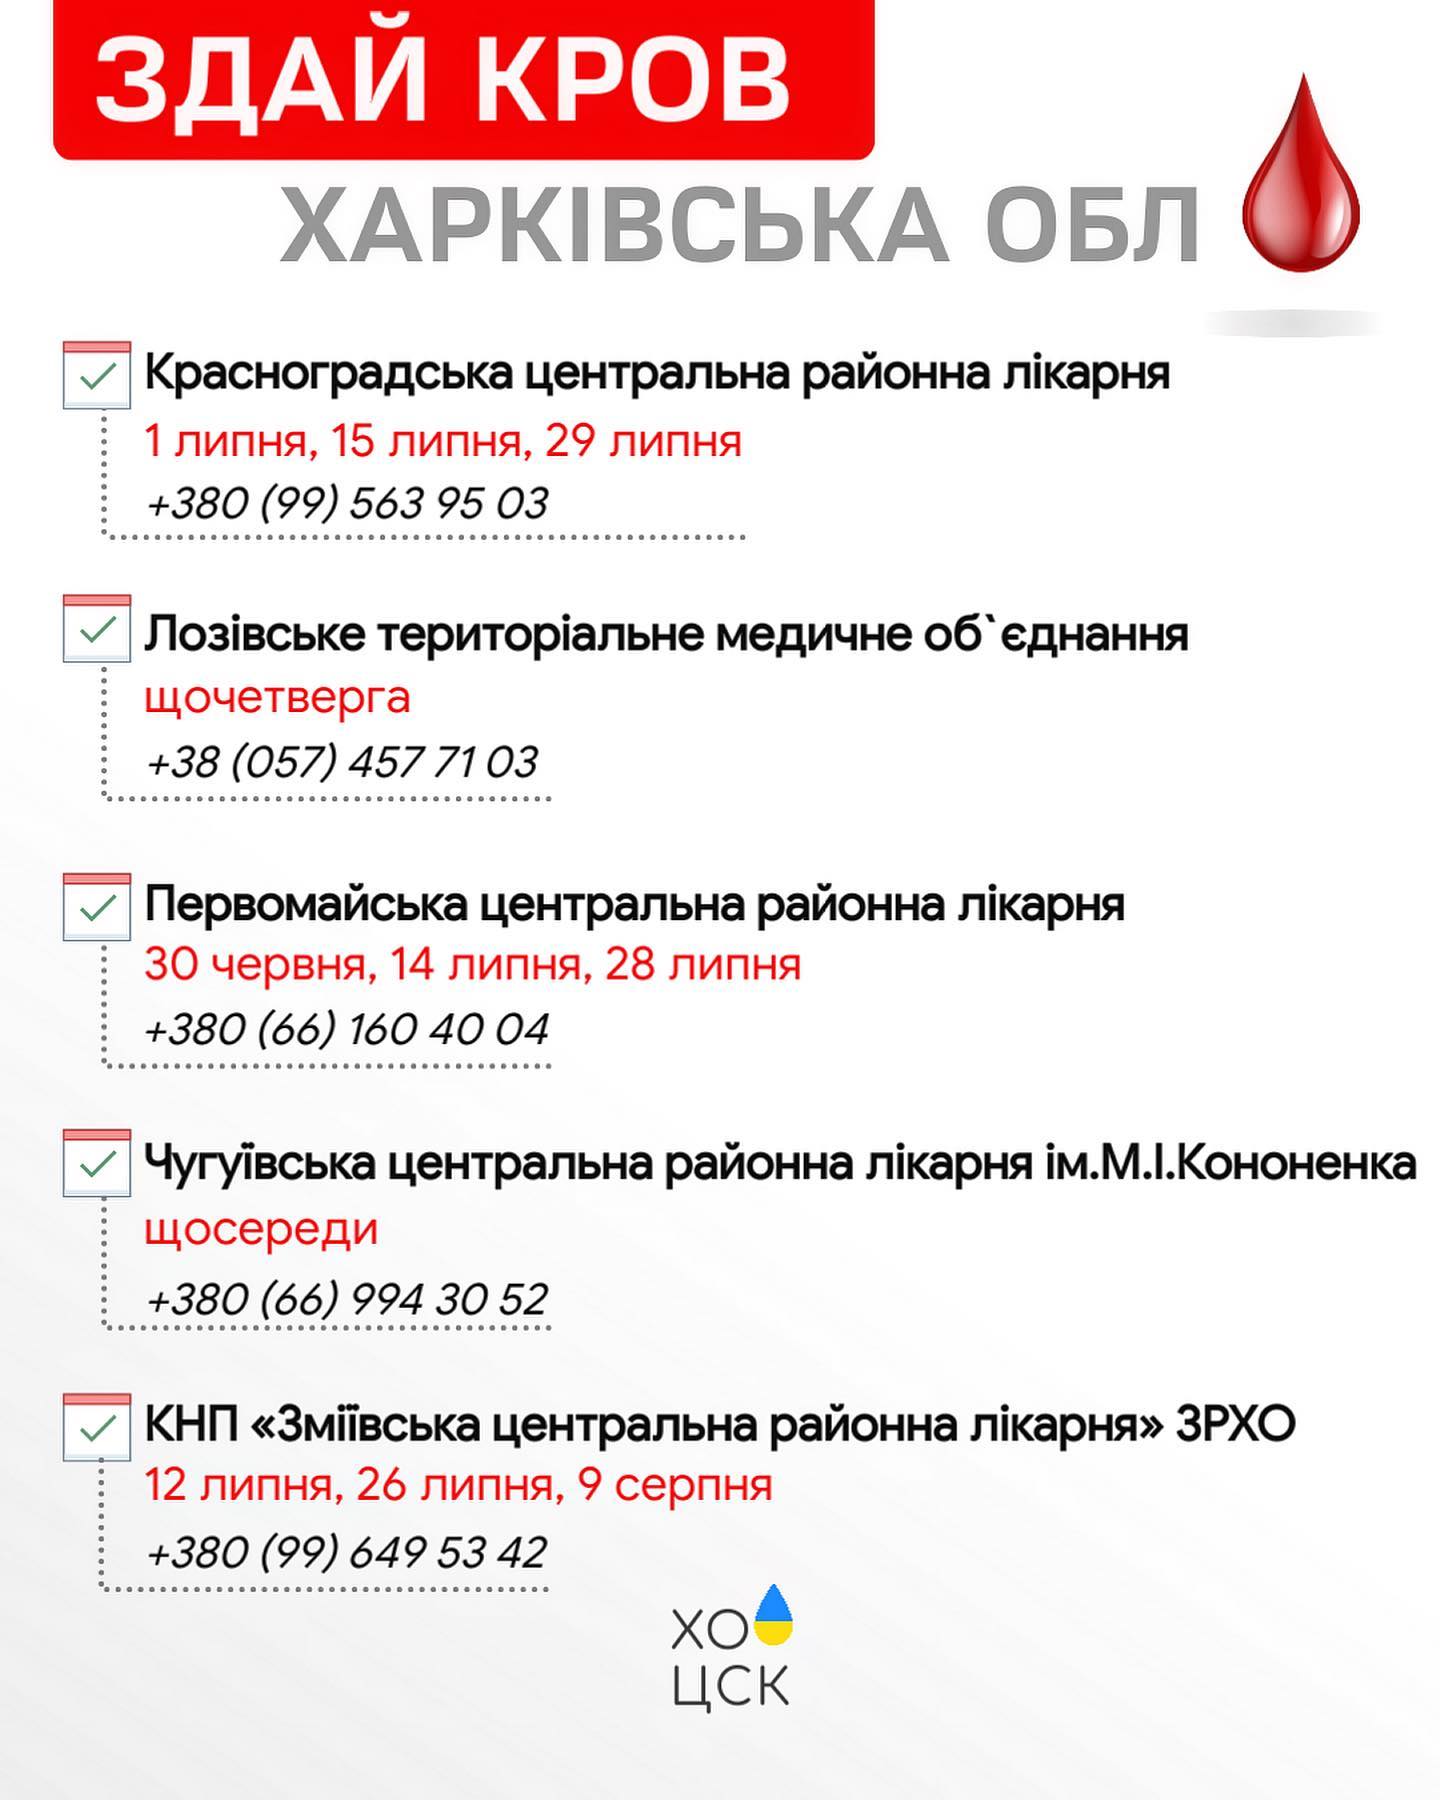 Графіка: Харківський обласний центр служби крові